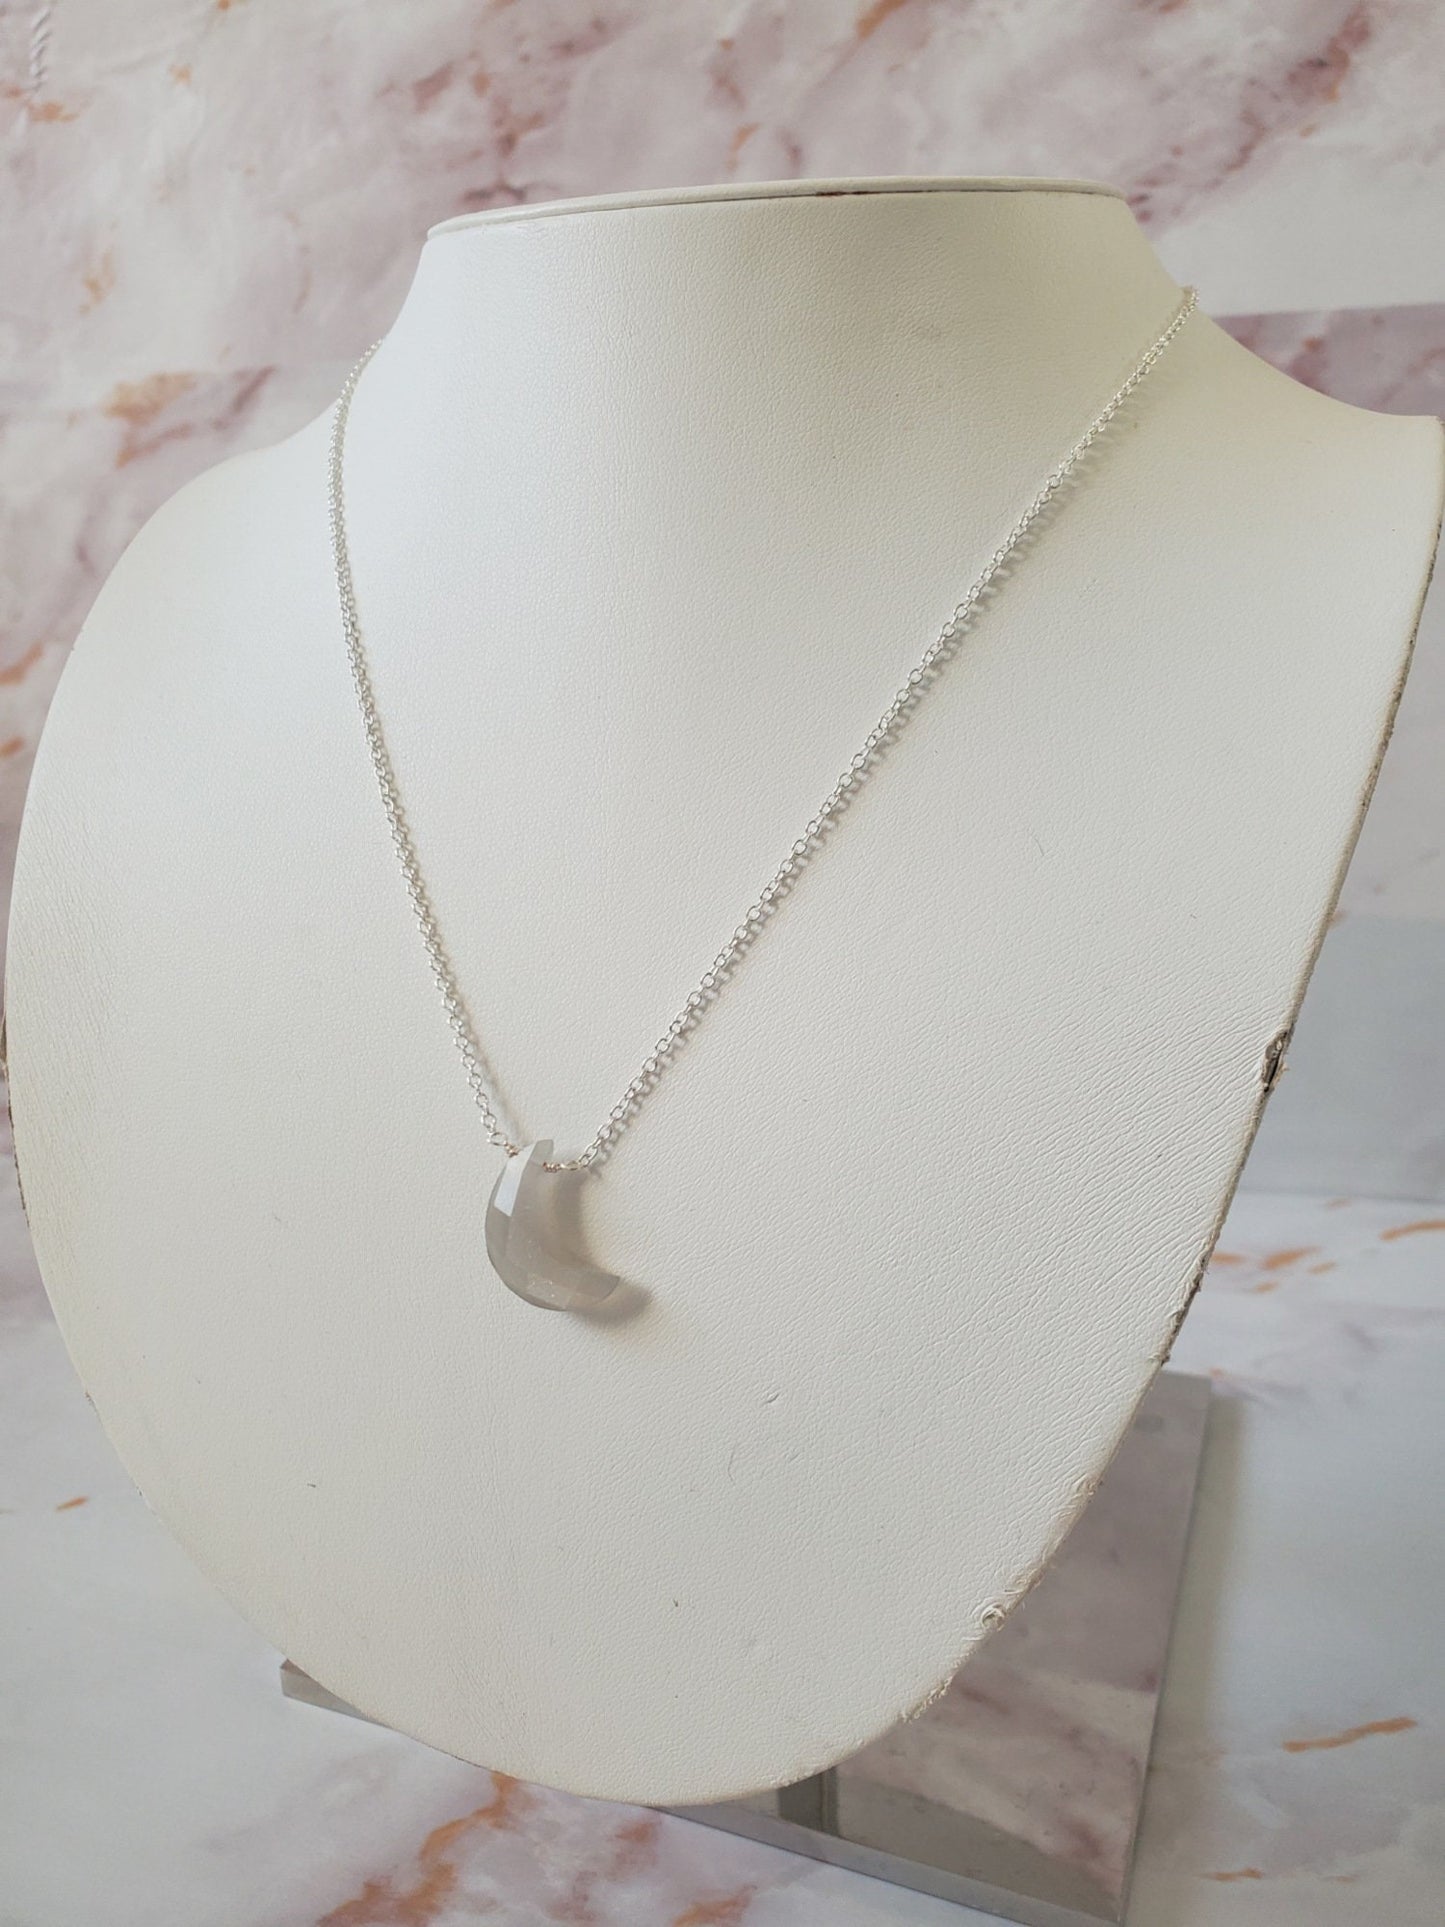 Grey Moonstone Necklace in Silver